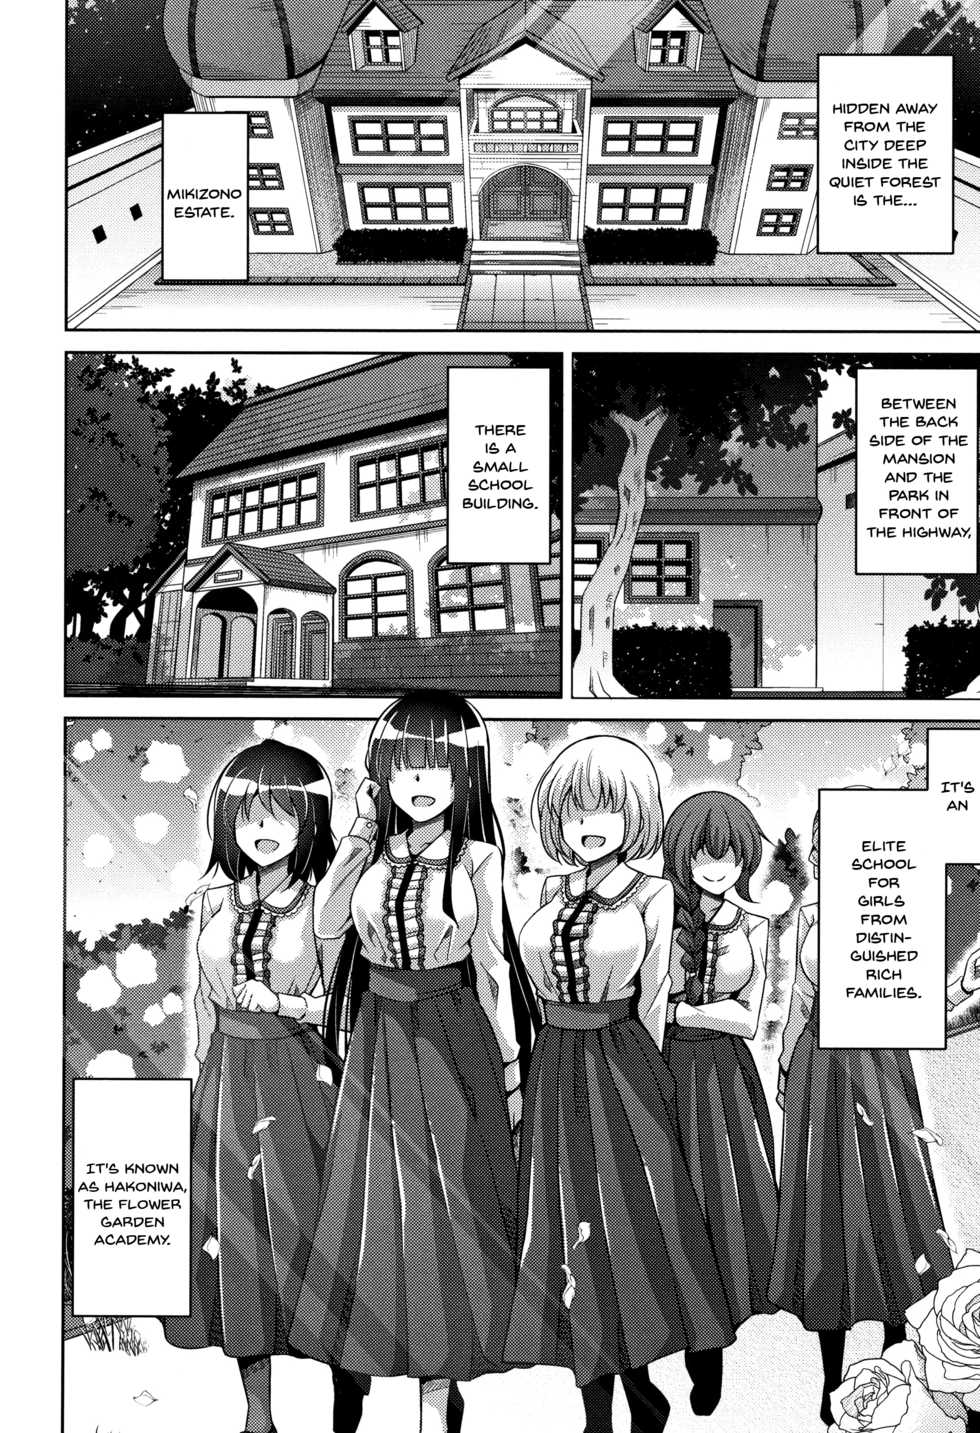 [Nikusoukyuu.] Hakoniwa ni Saku Mesu no Hana | Women Like Flowers Growing From The Garden [English] {Doujins.com} - Page 9